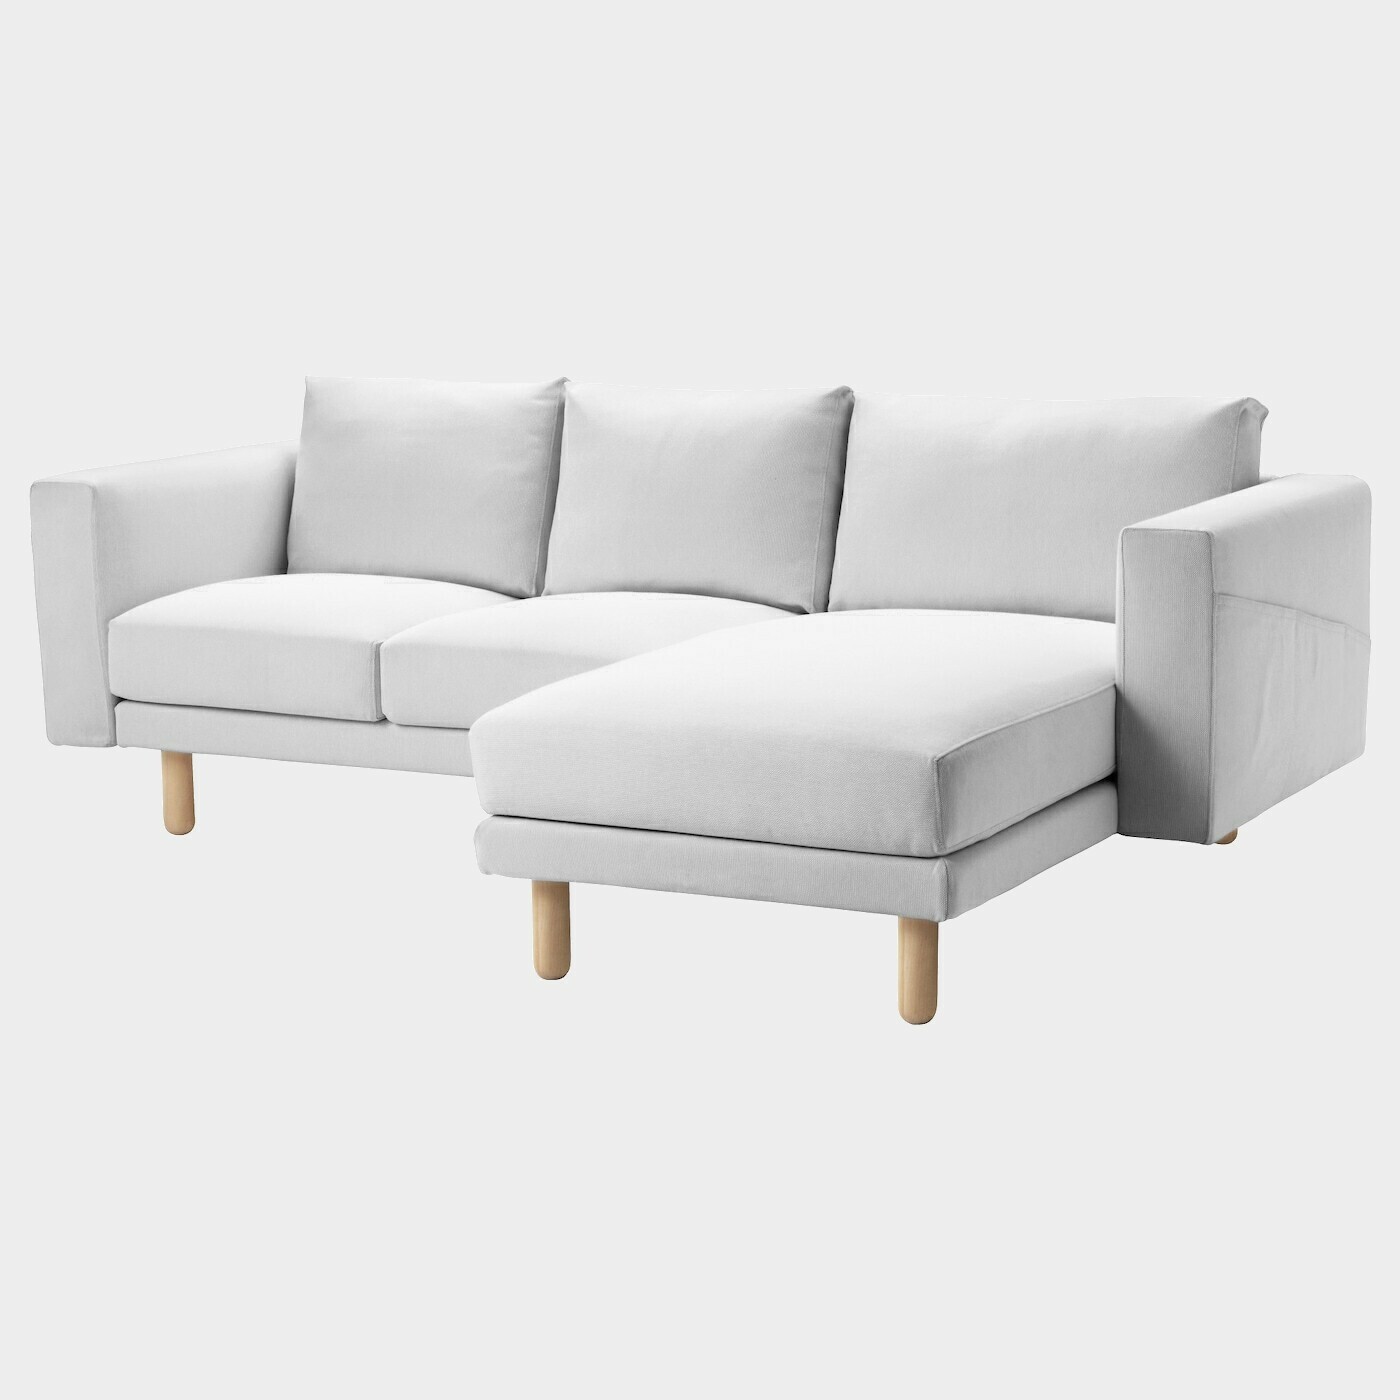 NORSBORG Bezug 3er-Sofa  - extra Bezüge - Möbel Ideen für dein Zuhause von Home Trends. Möbel Trends von Social Media Influencer für dein Skandi Zuhause.